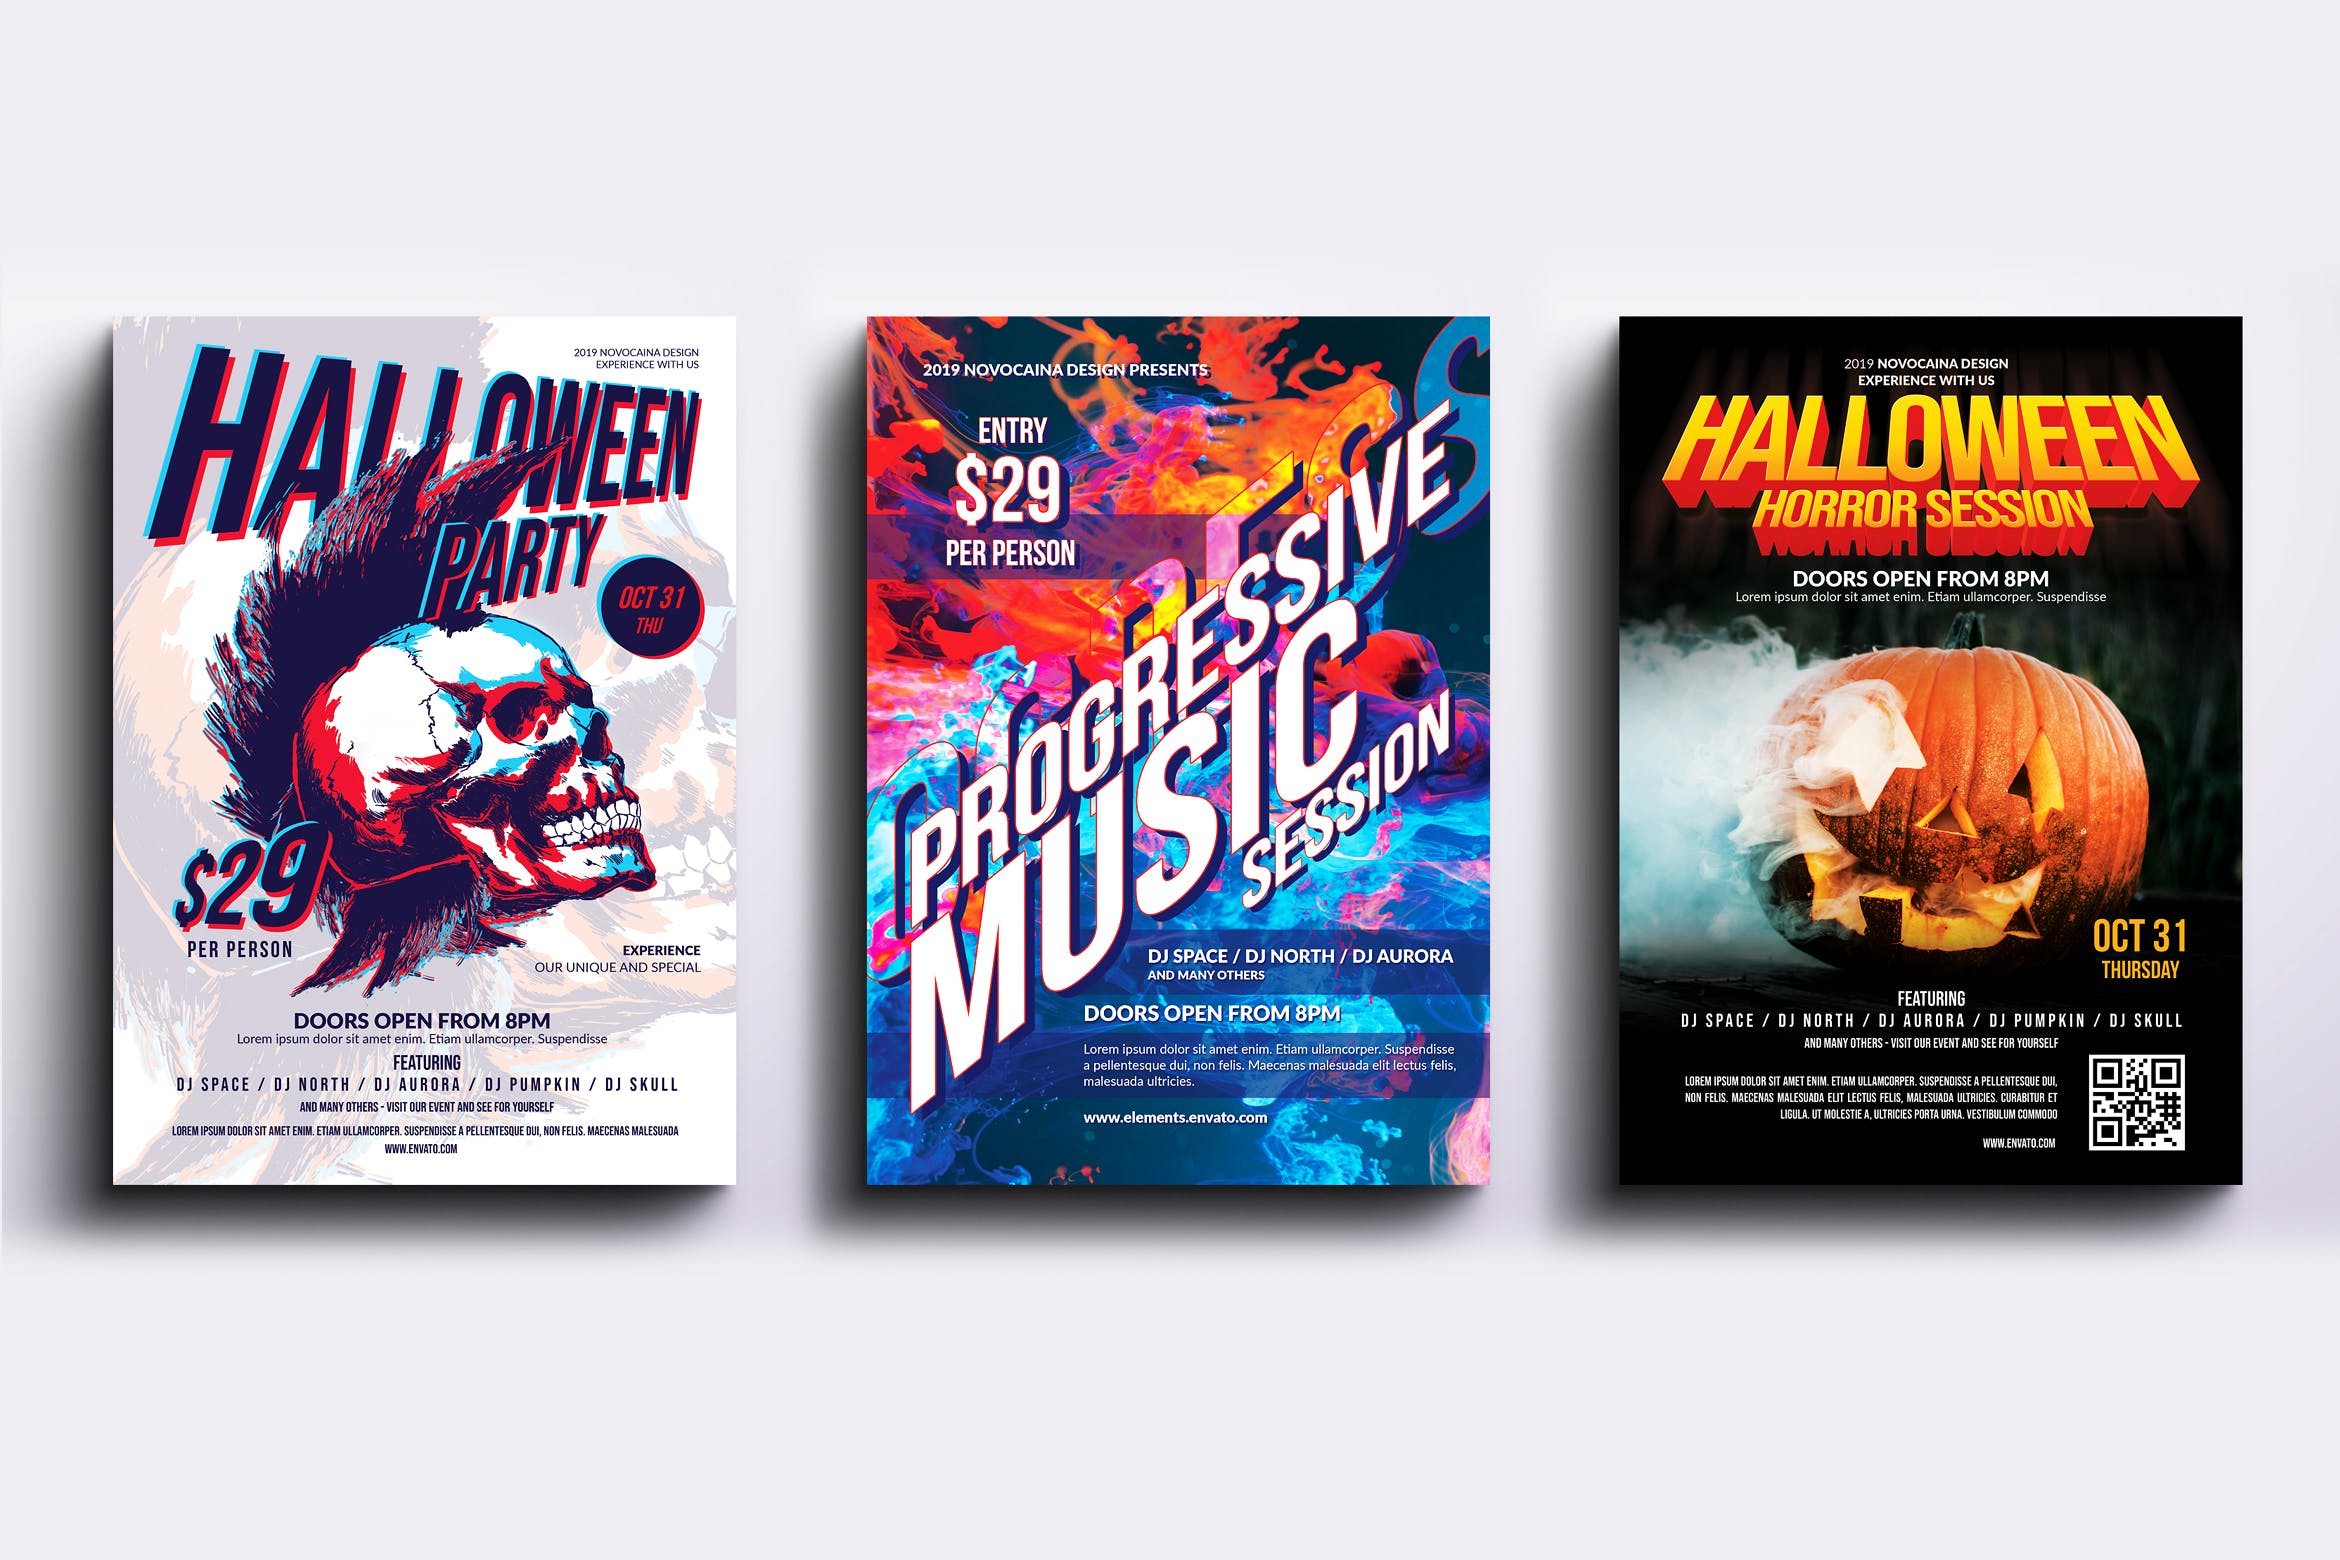 迪斯科音乐舞厅主题活动派对海报PSD素材非凡图库精选模板合集v4 Event Party Posters & Flyers Bundle V4插图